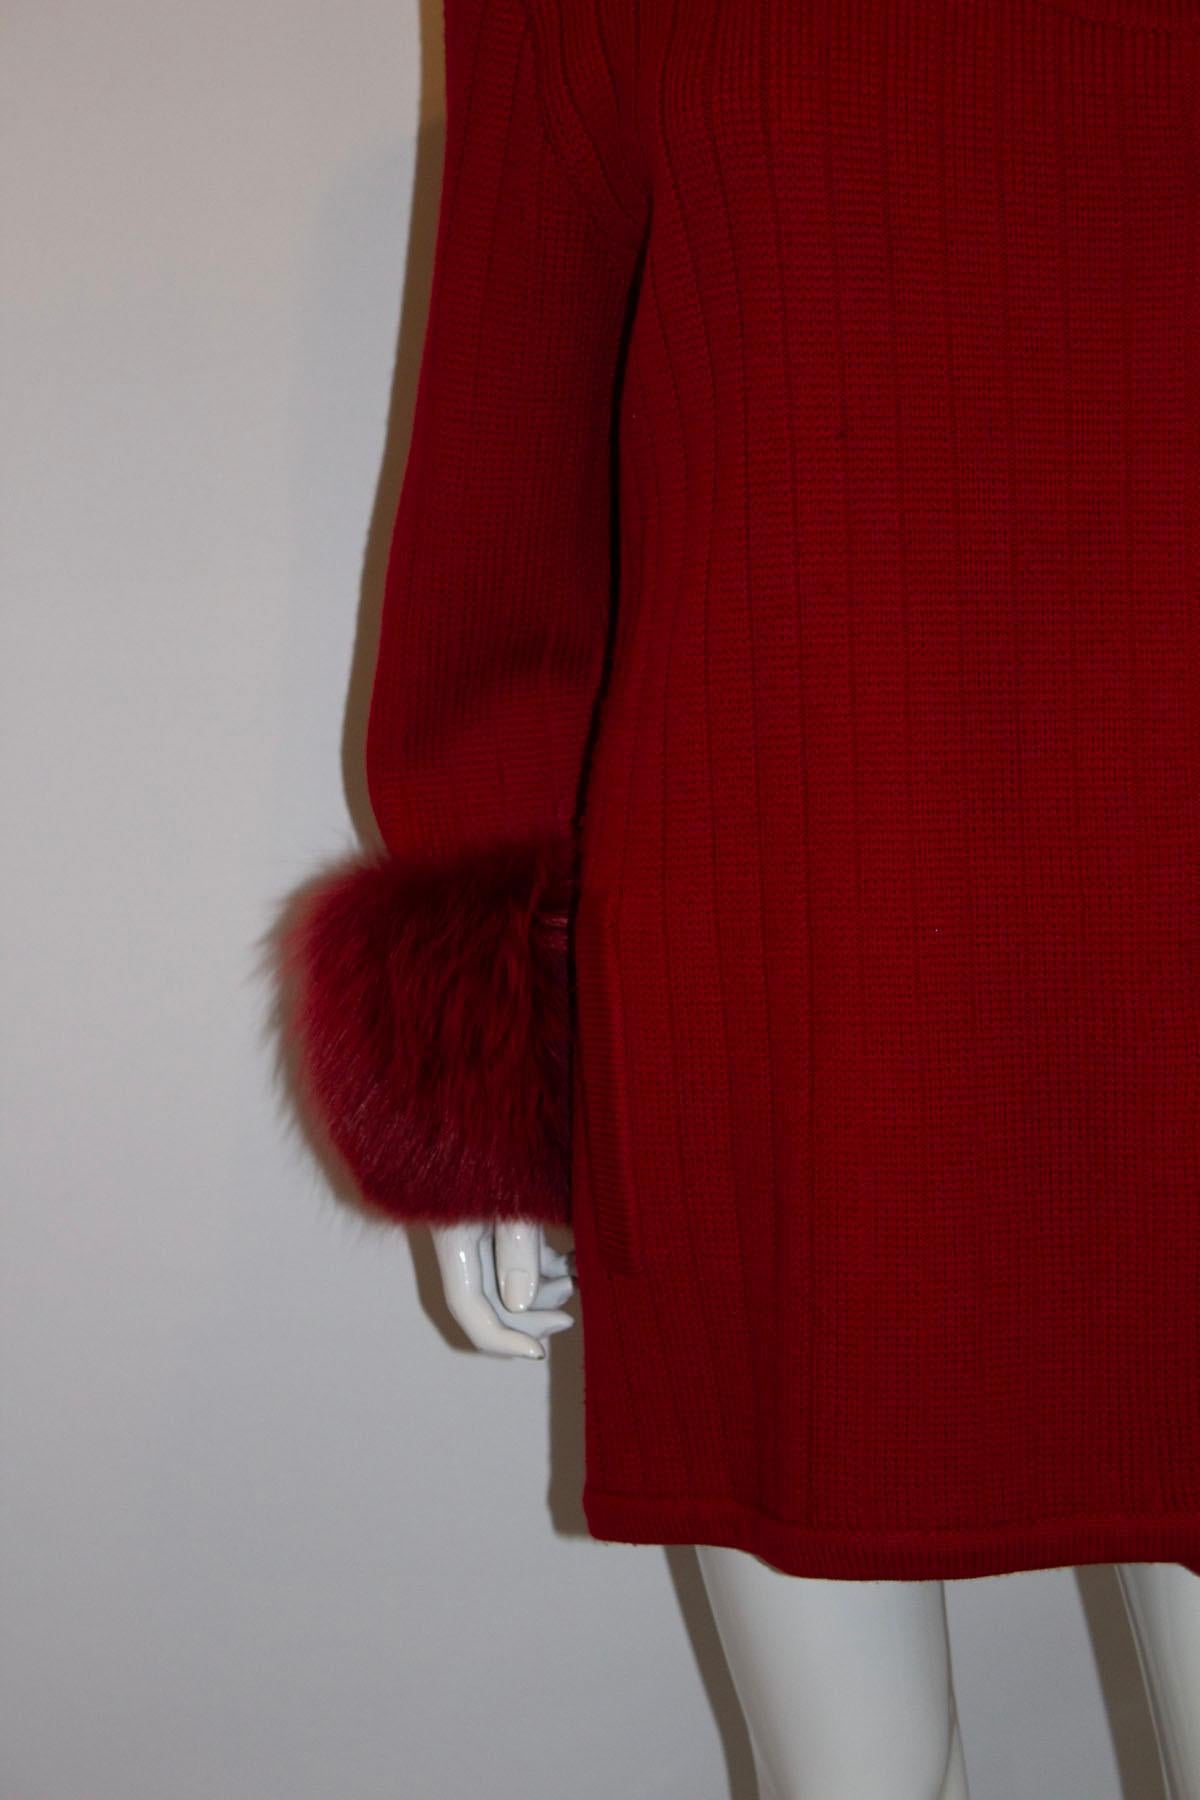 Une veste vintage en laine rouge de Harrods qui fait tourner les têtes. Dans un  En maille de laine épaisse, cette veste vous tiendra merveilleusement chaud et fera une entrée remarquée. La veste en laine rouge est dépourvue de col, comporte de gros